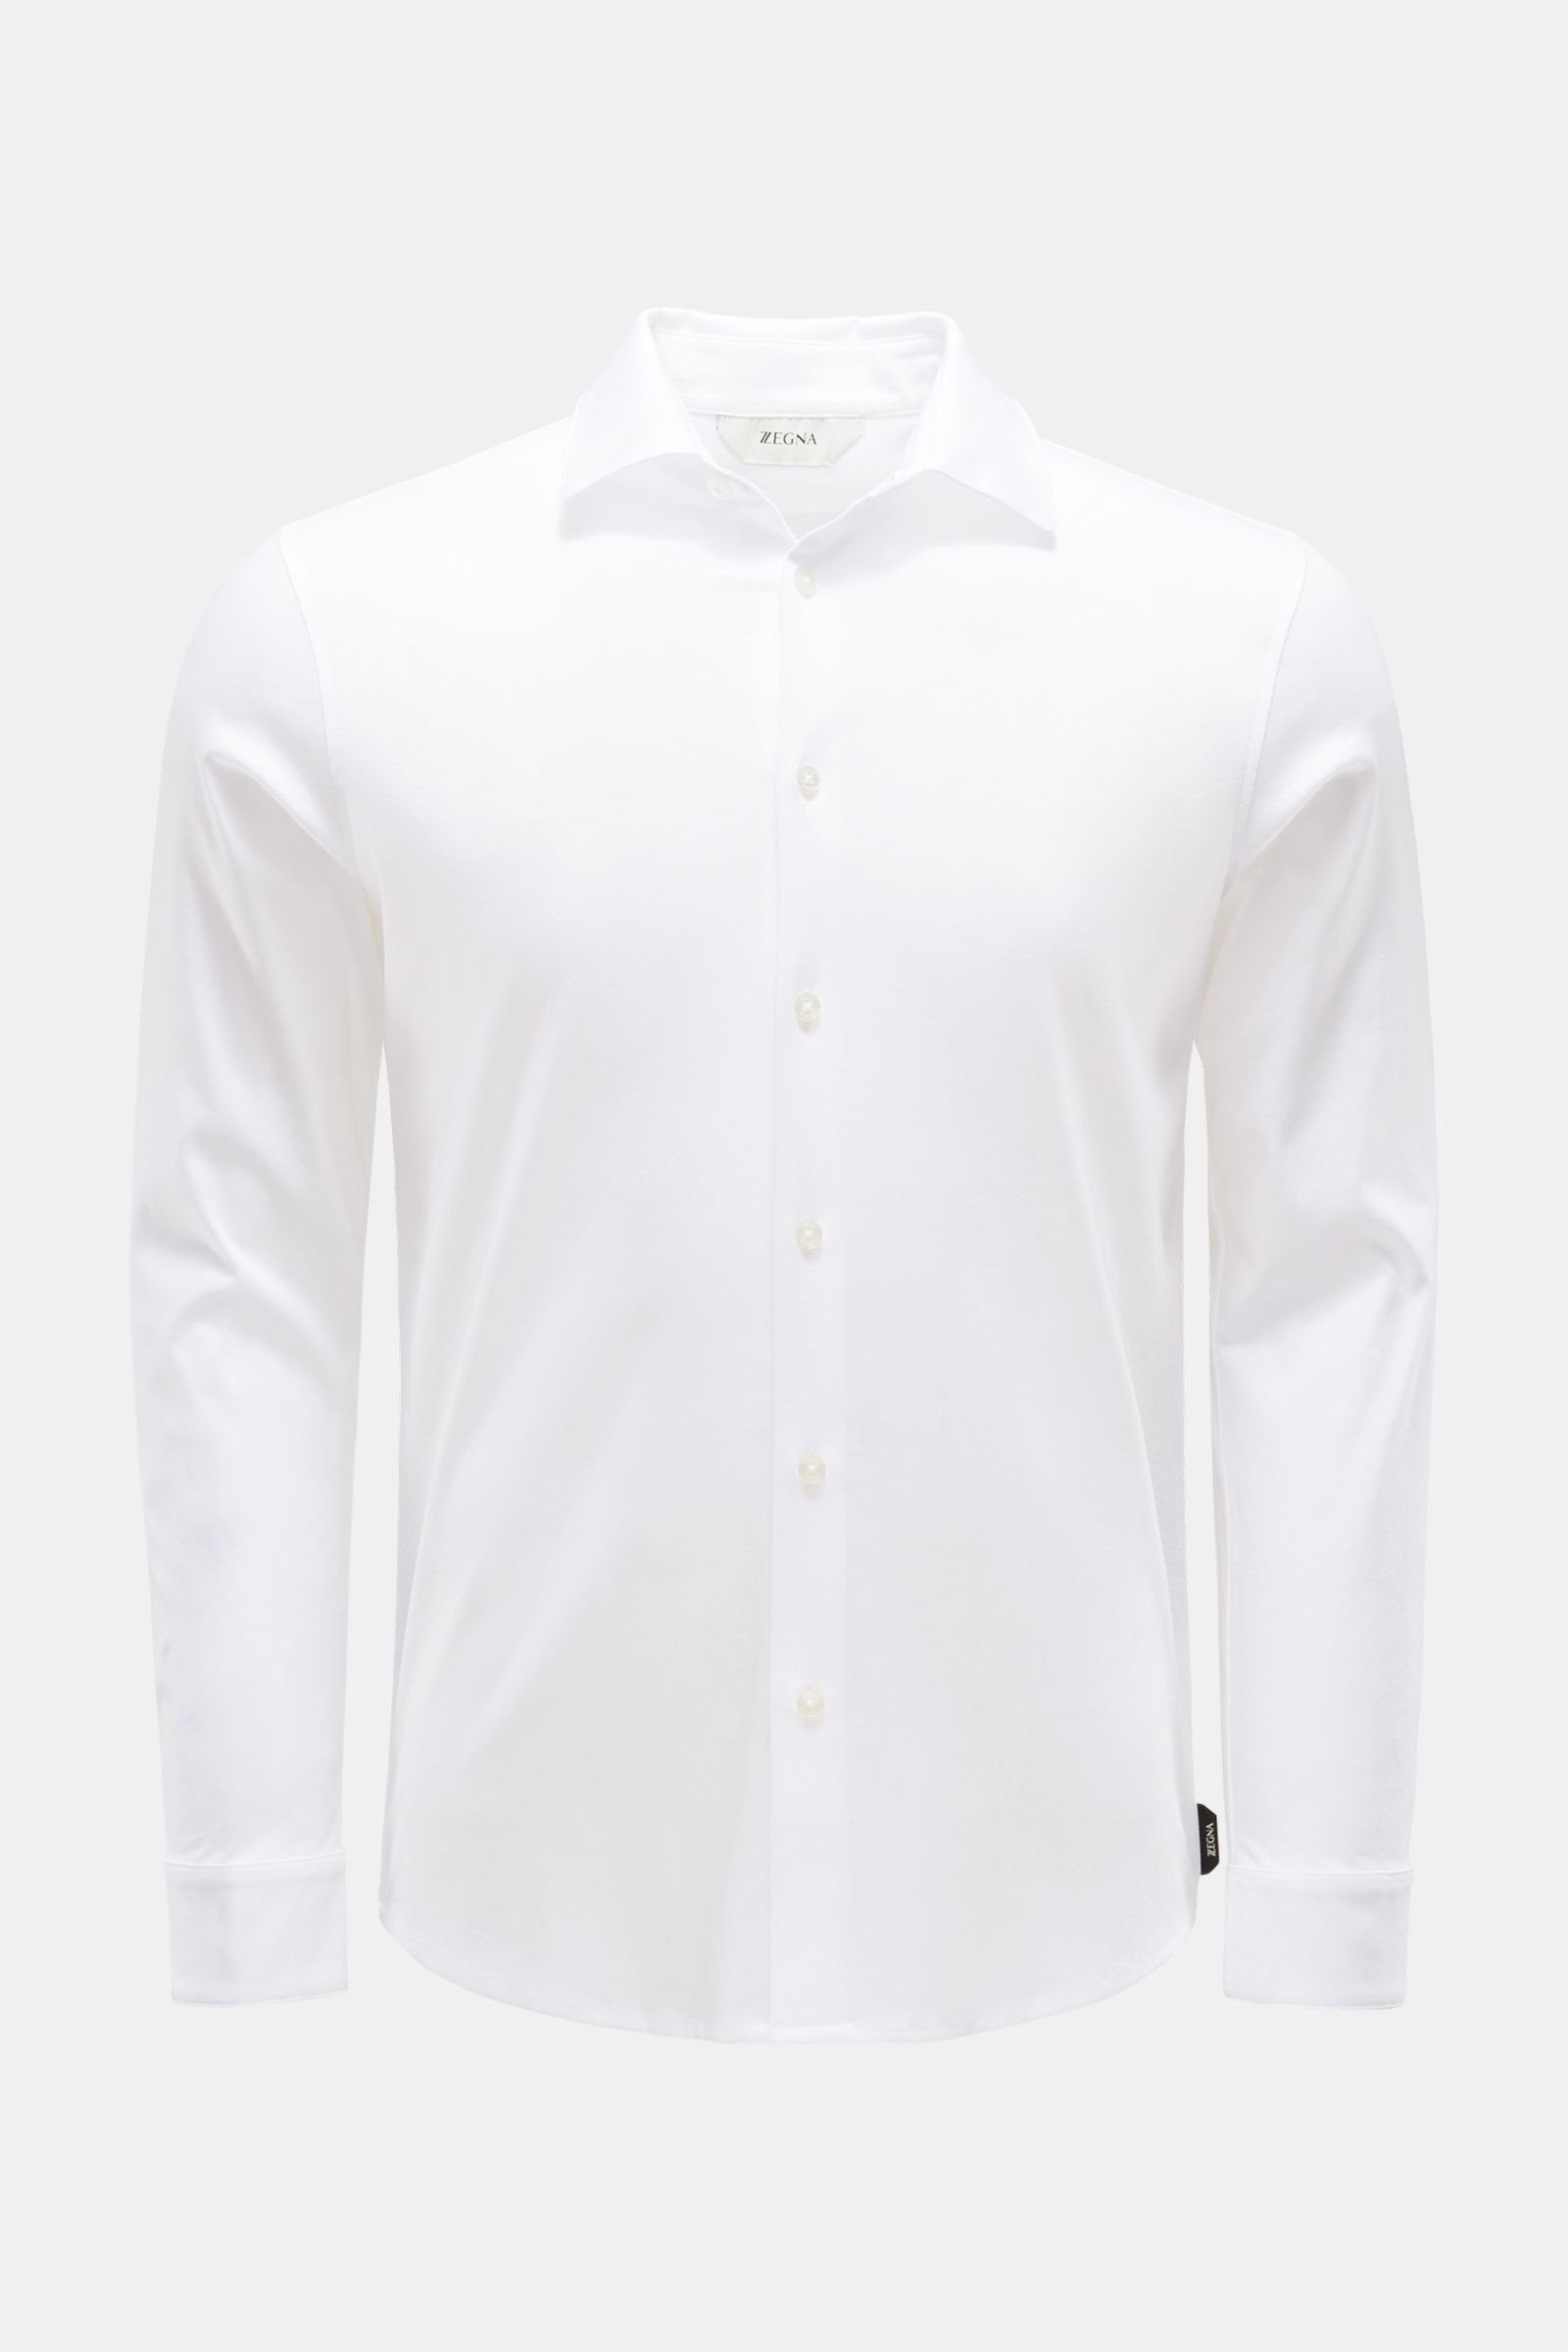 Jersey-Hemd schmaler Kragen weiß